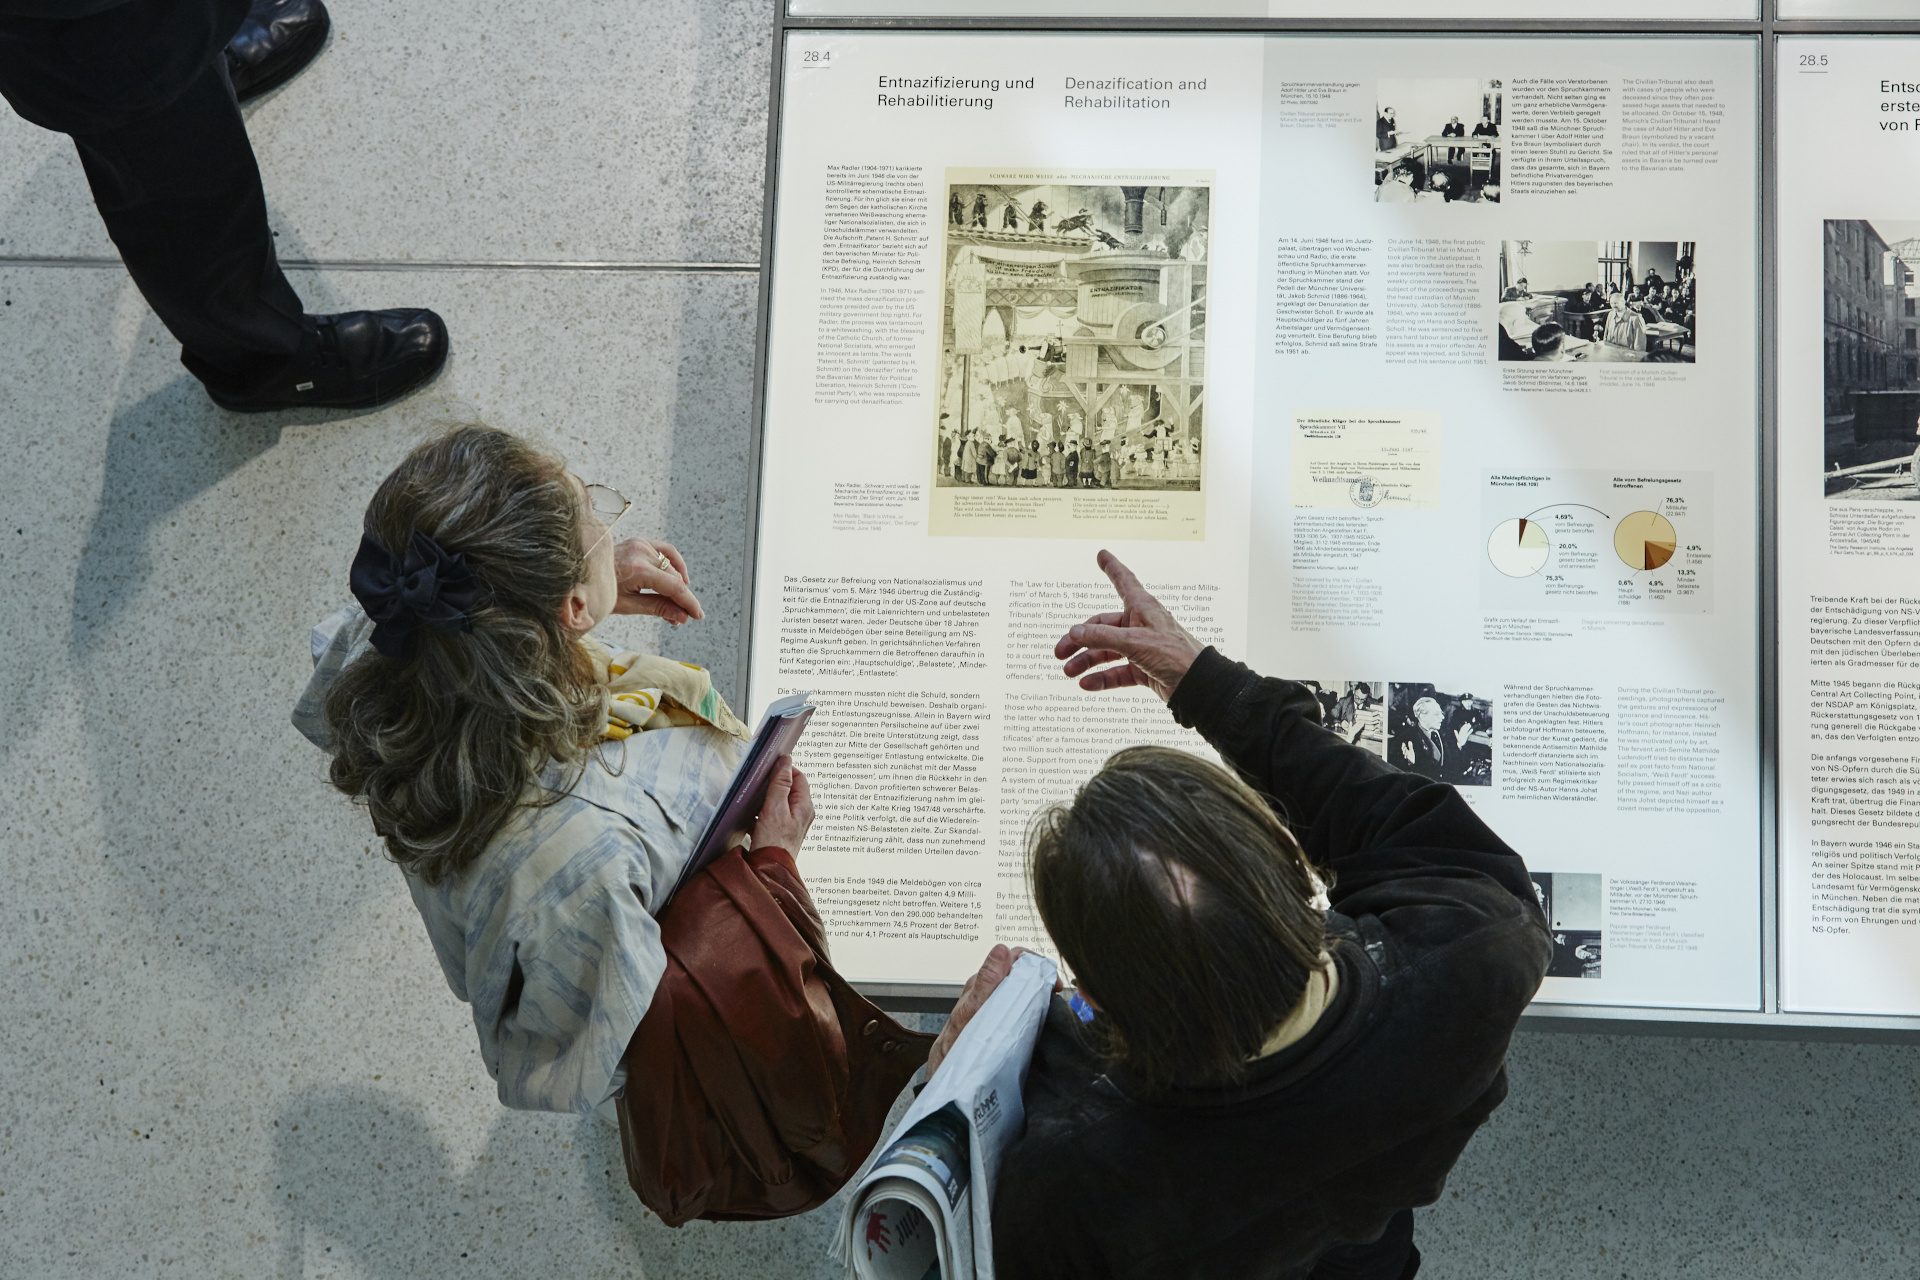 : Blick von oben auf zwei Personen, die vor einem Ausstellungstisch mit Texten und Bildern stehen.